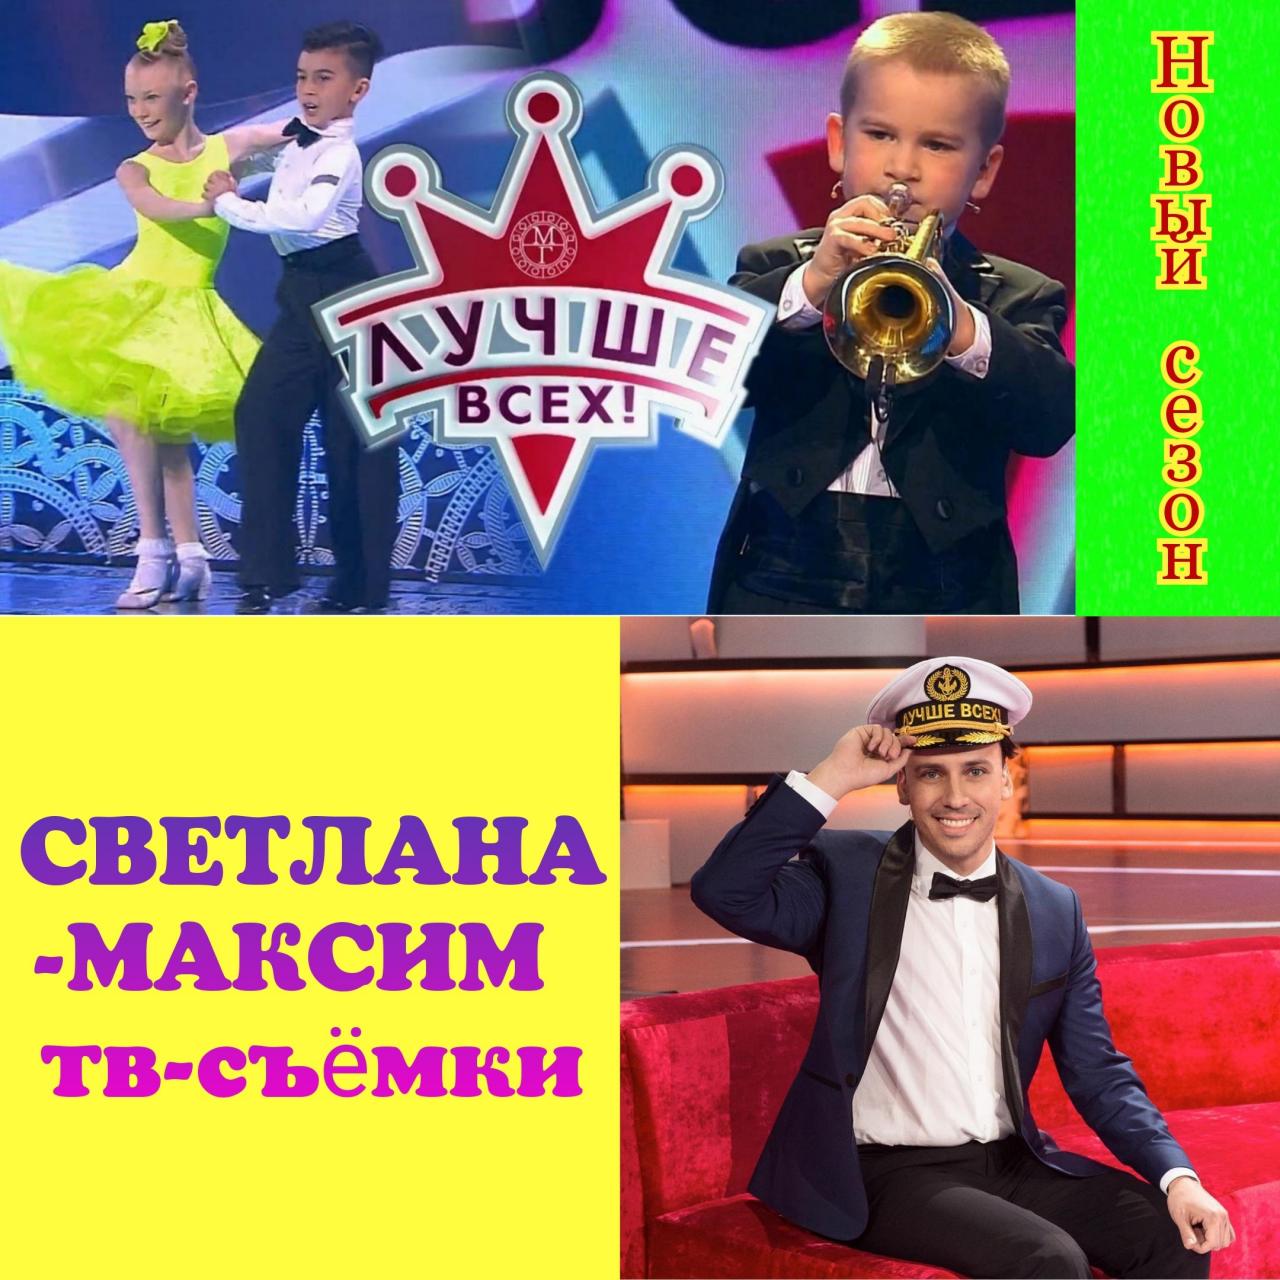 23, 24, 25, 26 февраля развлекательное шоу "ЛУЧШЕ ВСЕХ".